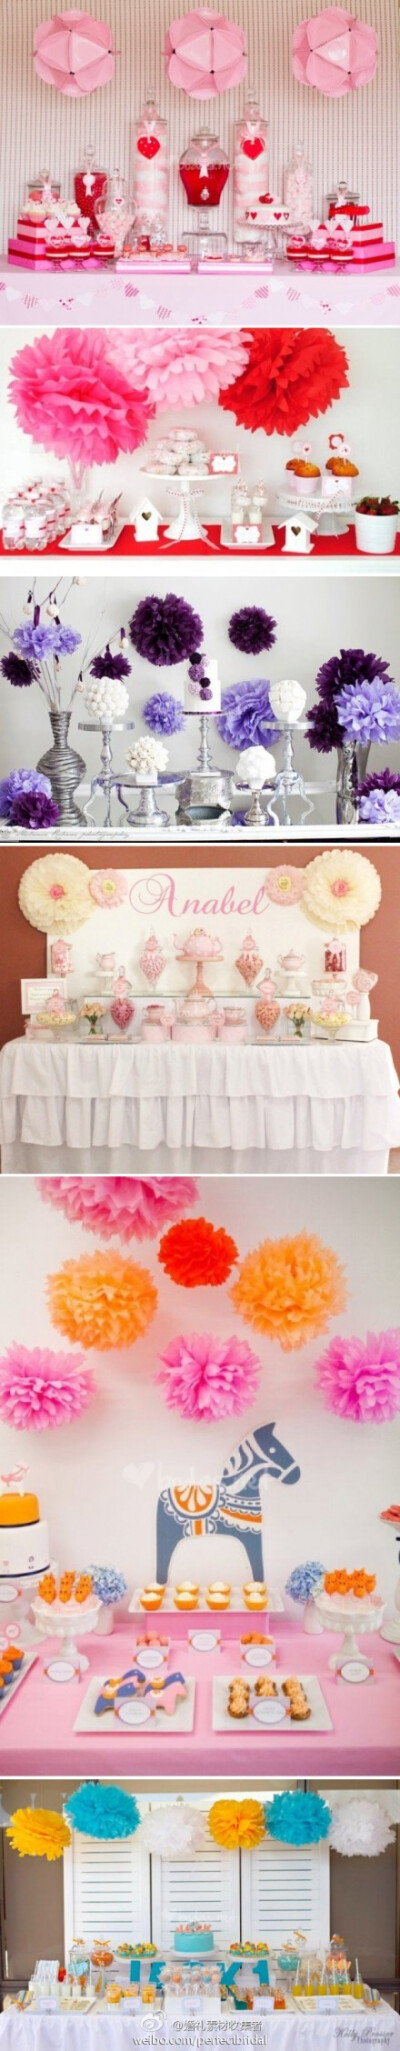 纸花装饰的甜品桌背景，完全可以借鉴到其他地方